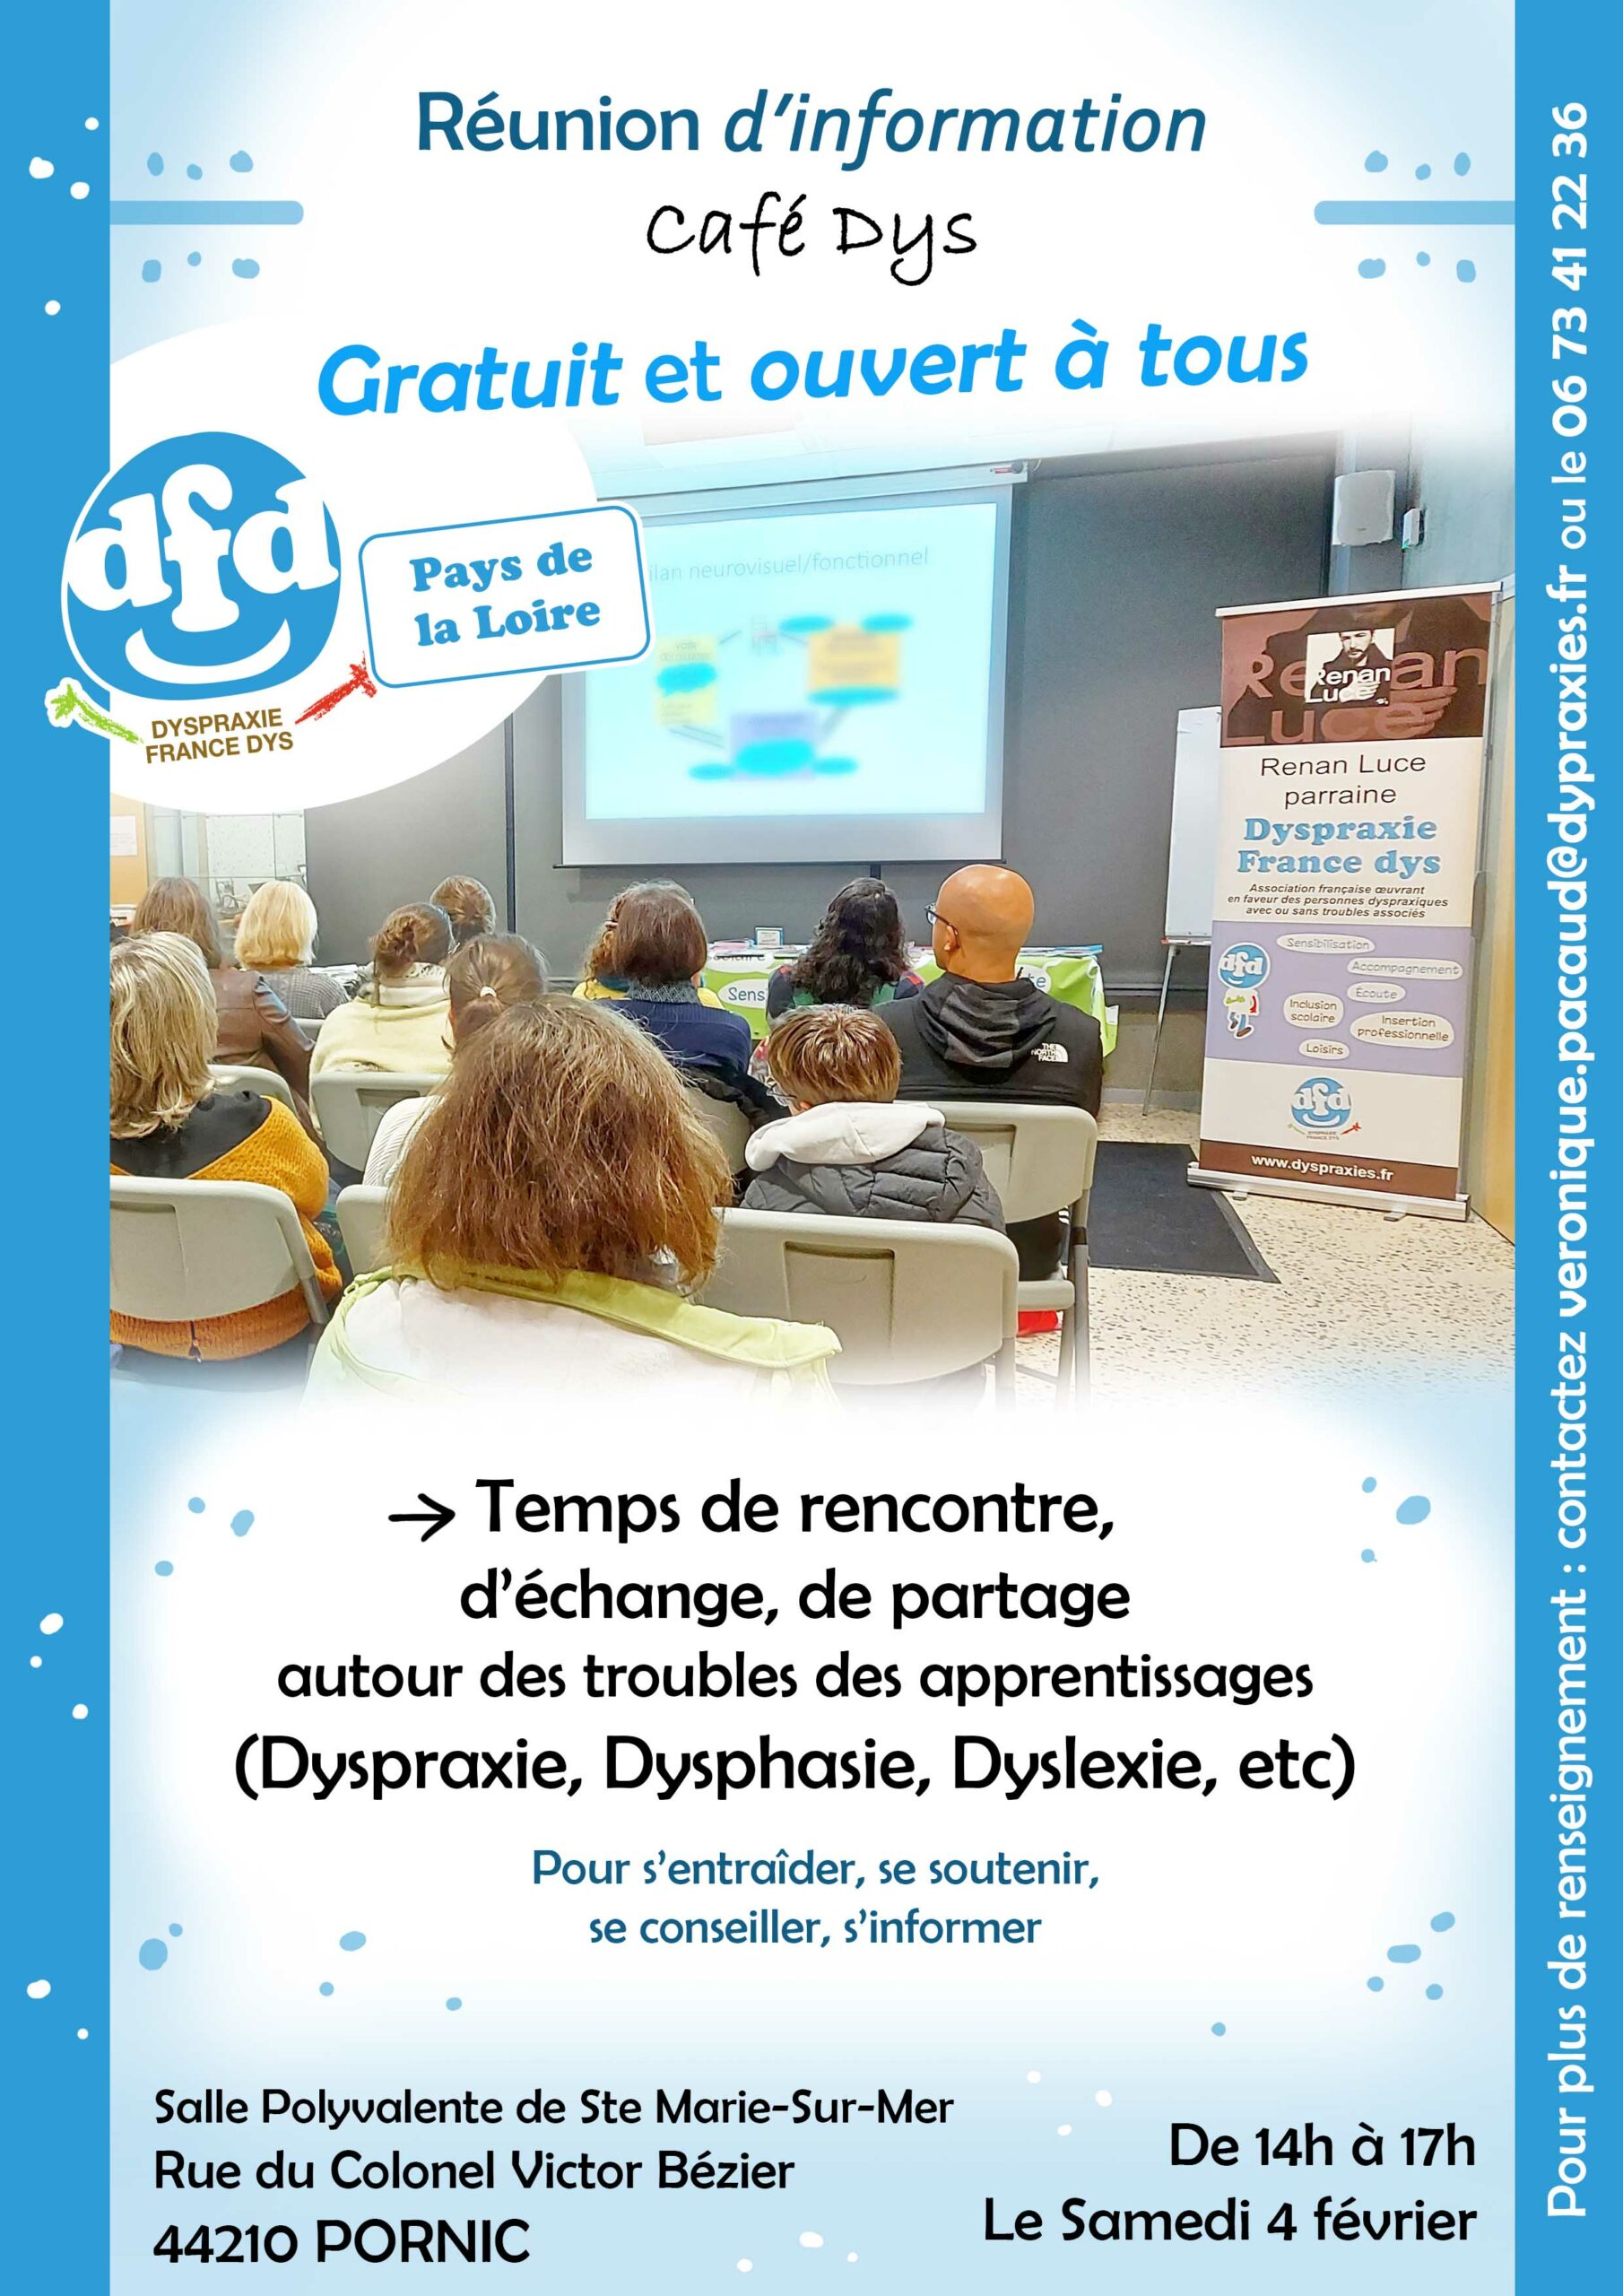 DFD Pays de la Loire : Café dys